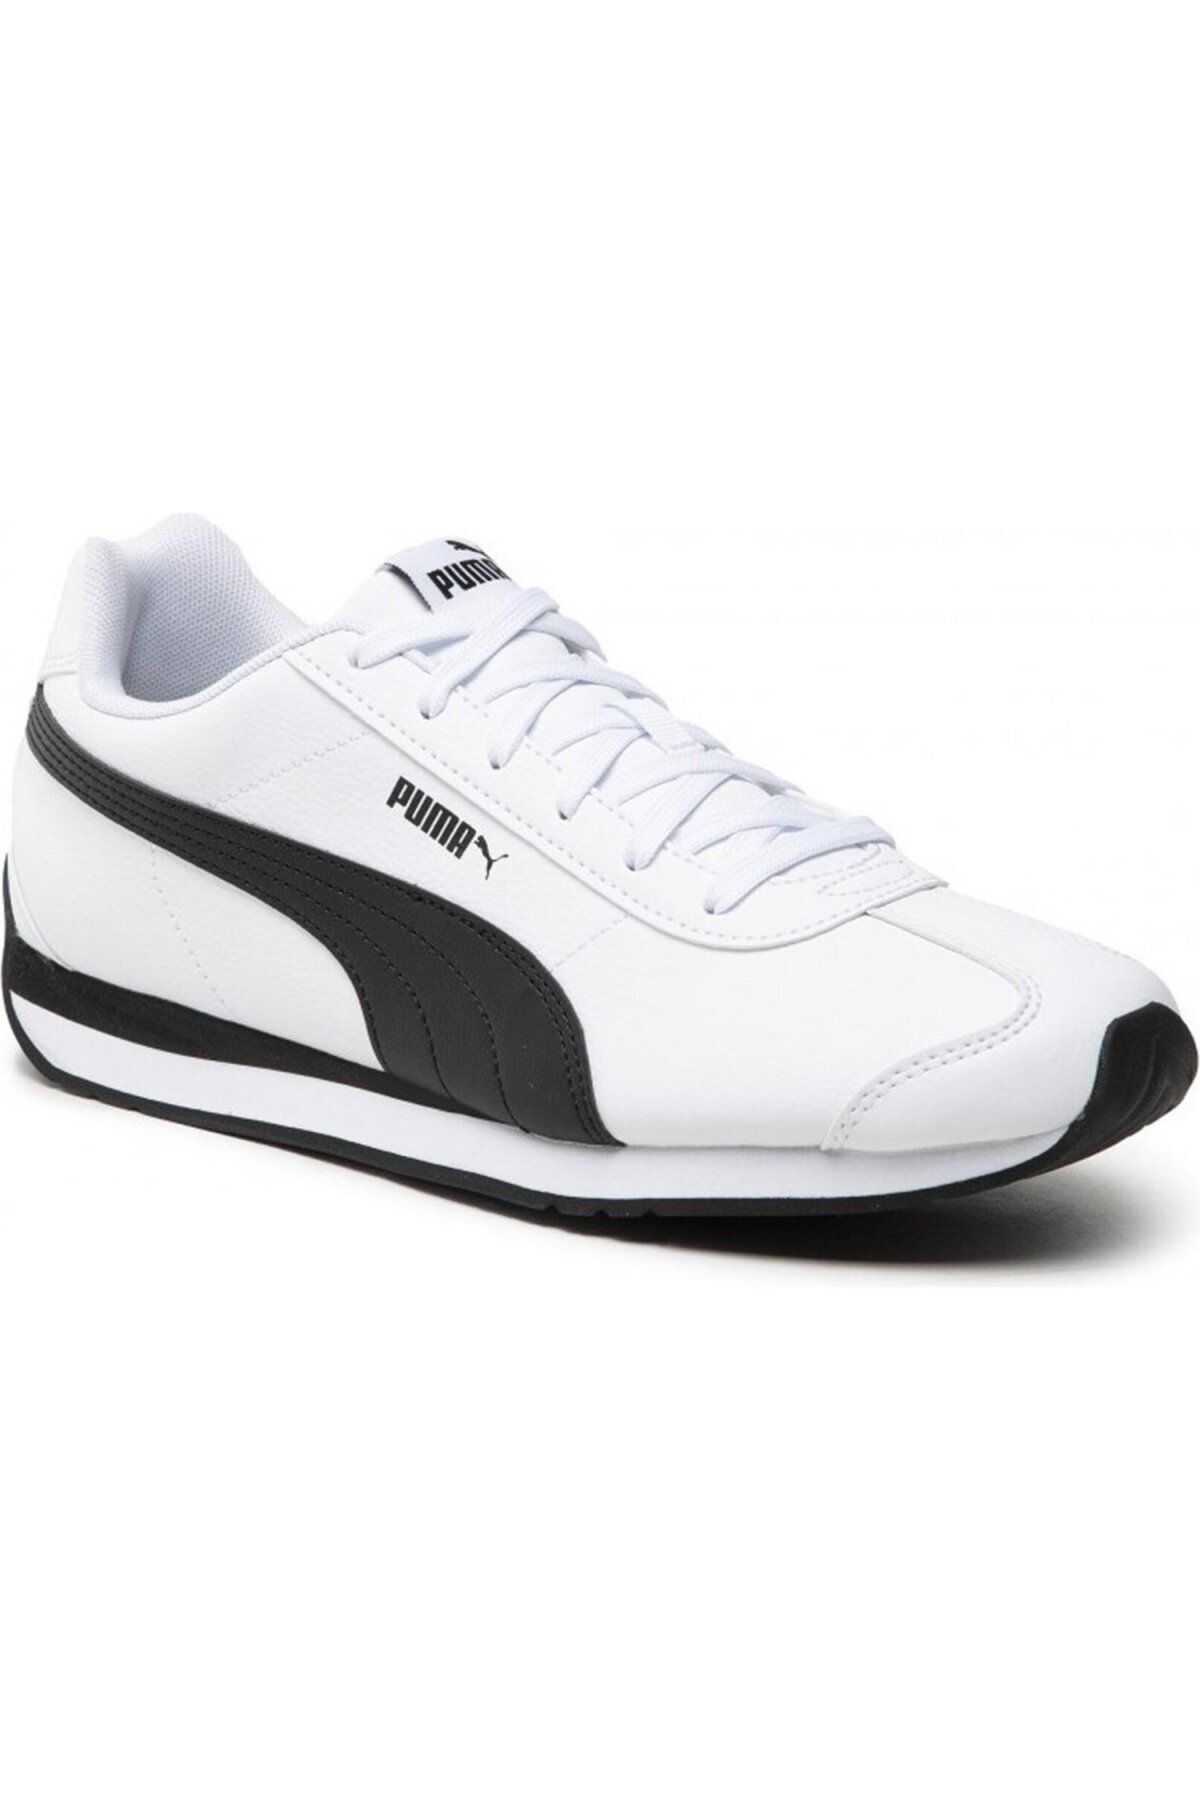 Puma 383037 06 Turin 3 Beyaz-Siyah Günlük Spor Ayakkabı